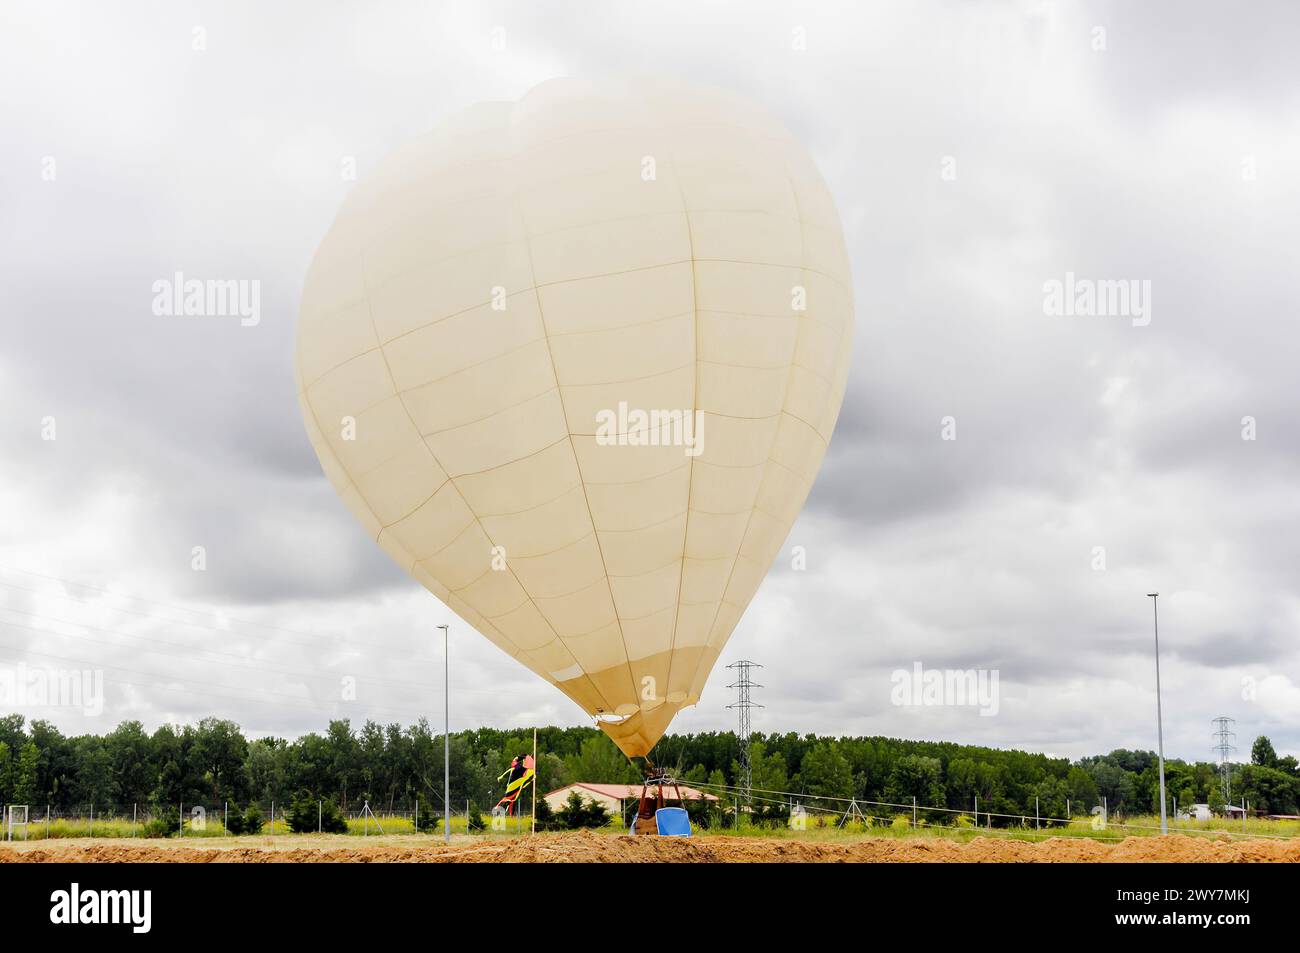 Ballon, der an einem bewölkten Tag auf einem Feld thront. Heißluftballon. Stockfoto